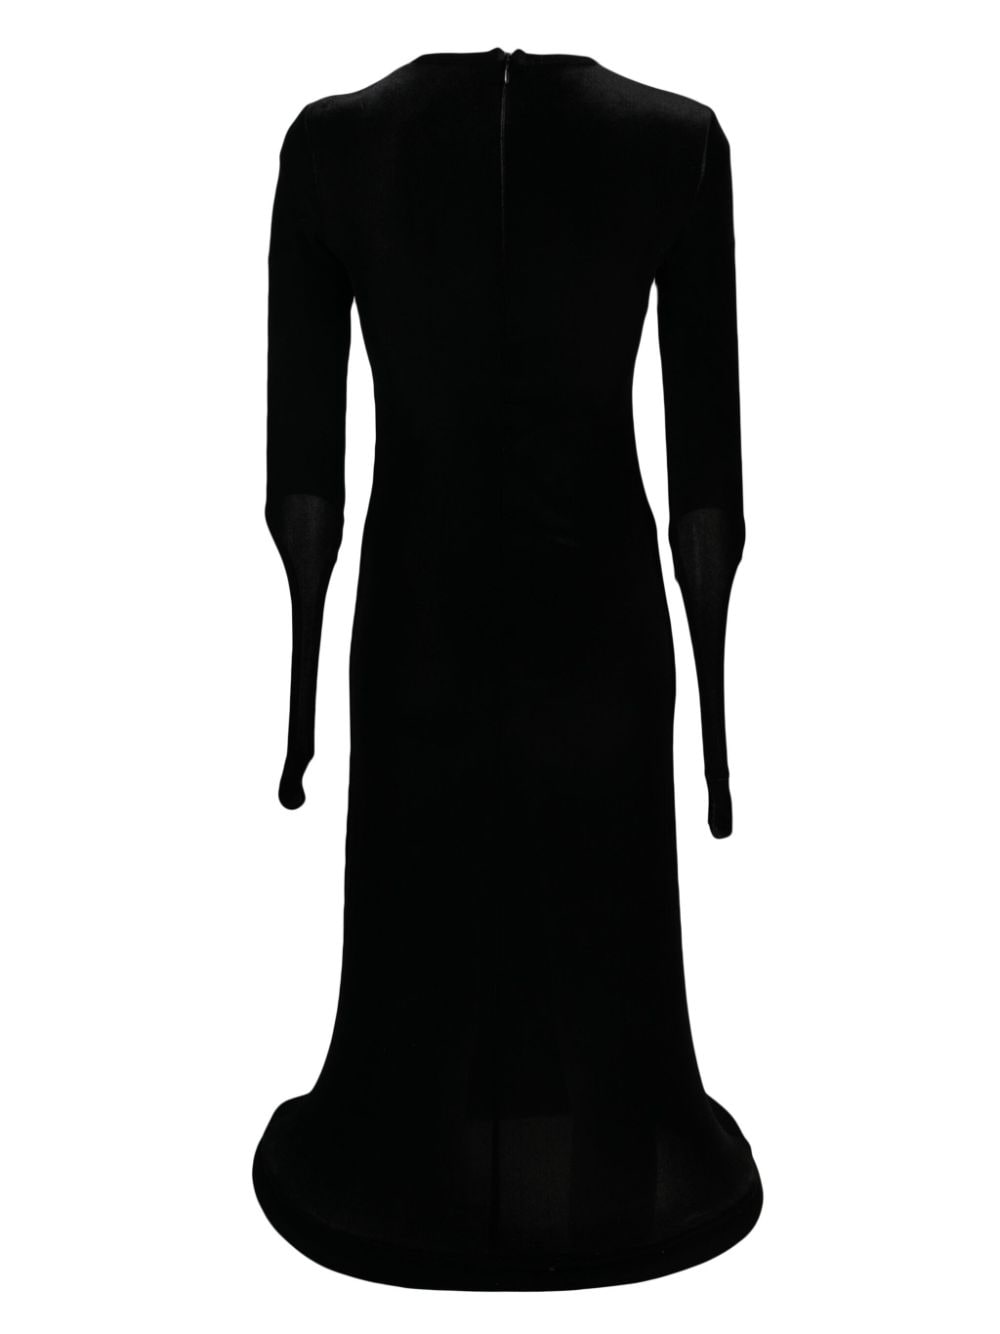 Melitta Baumeister Fluwelen jurk - Zwart